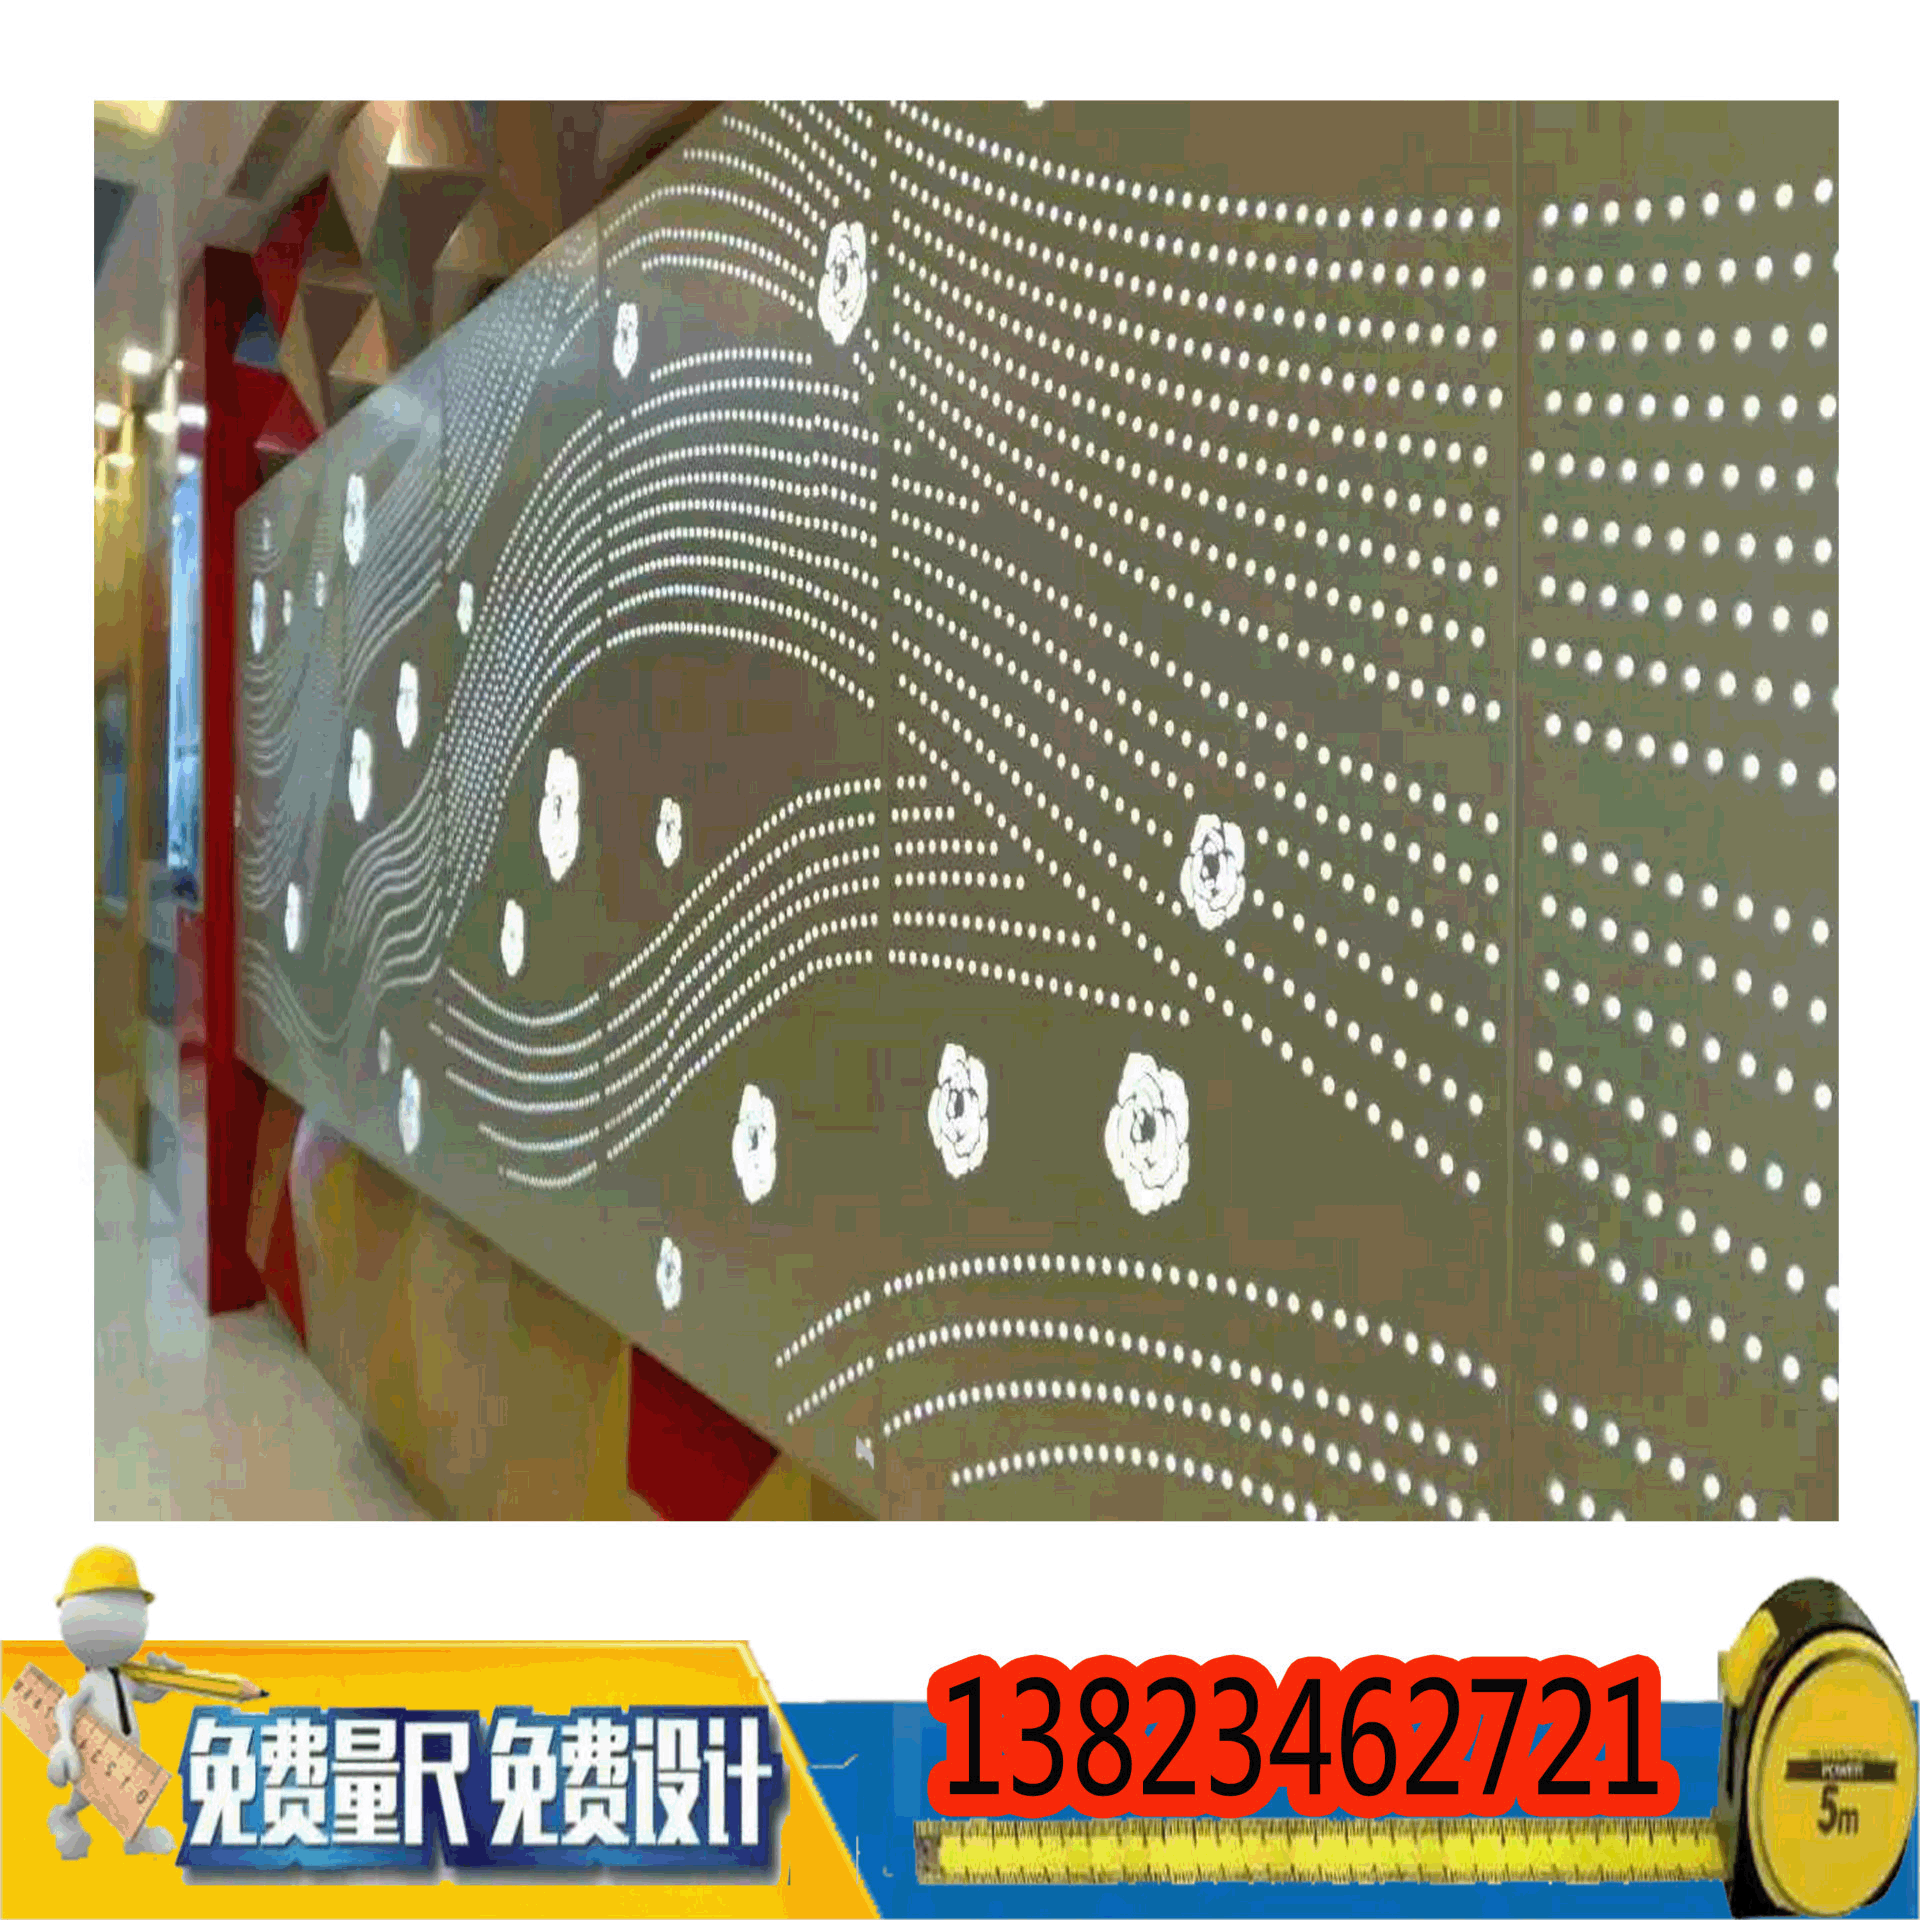 赣州冲孔铝单板厂家外墙穿孔铝单板门头招牌造型异形铝板天花